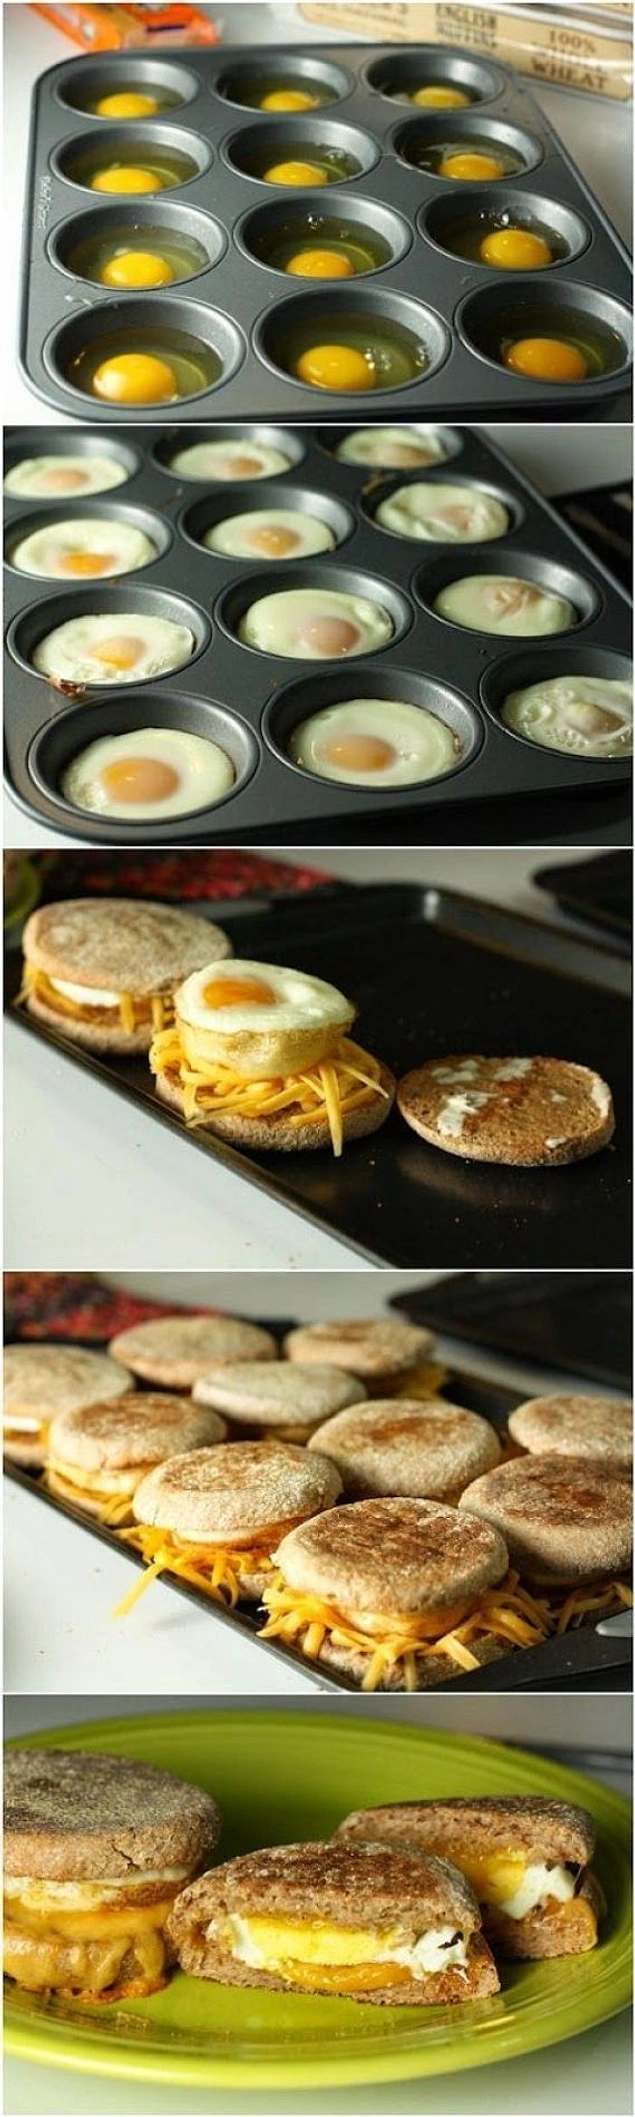 Приготовьте десять яиц в специальной формочке для маффинов и сделайте из них гамбургеры, если к вам на завтрак собирается целая рота ))